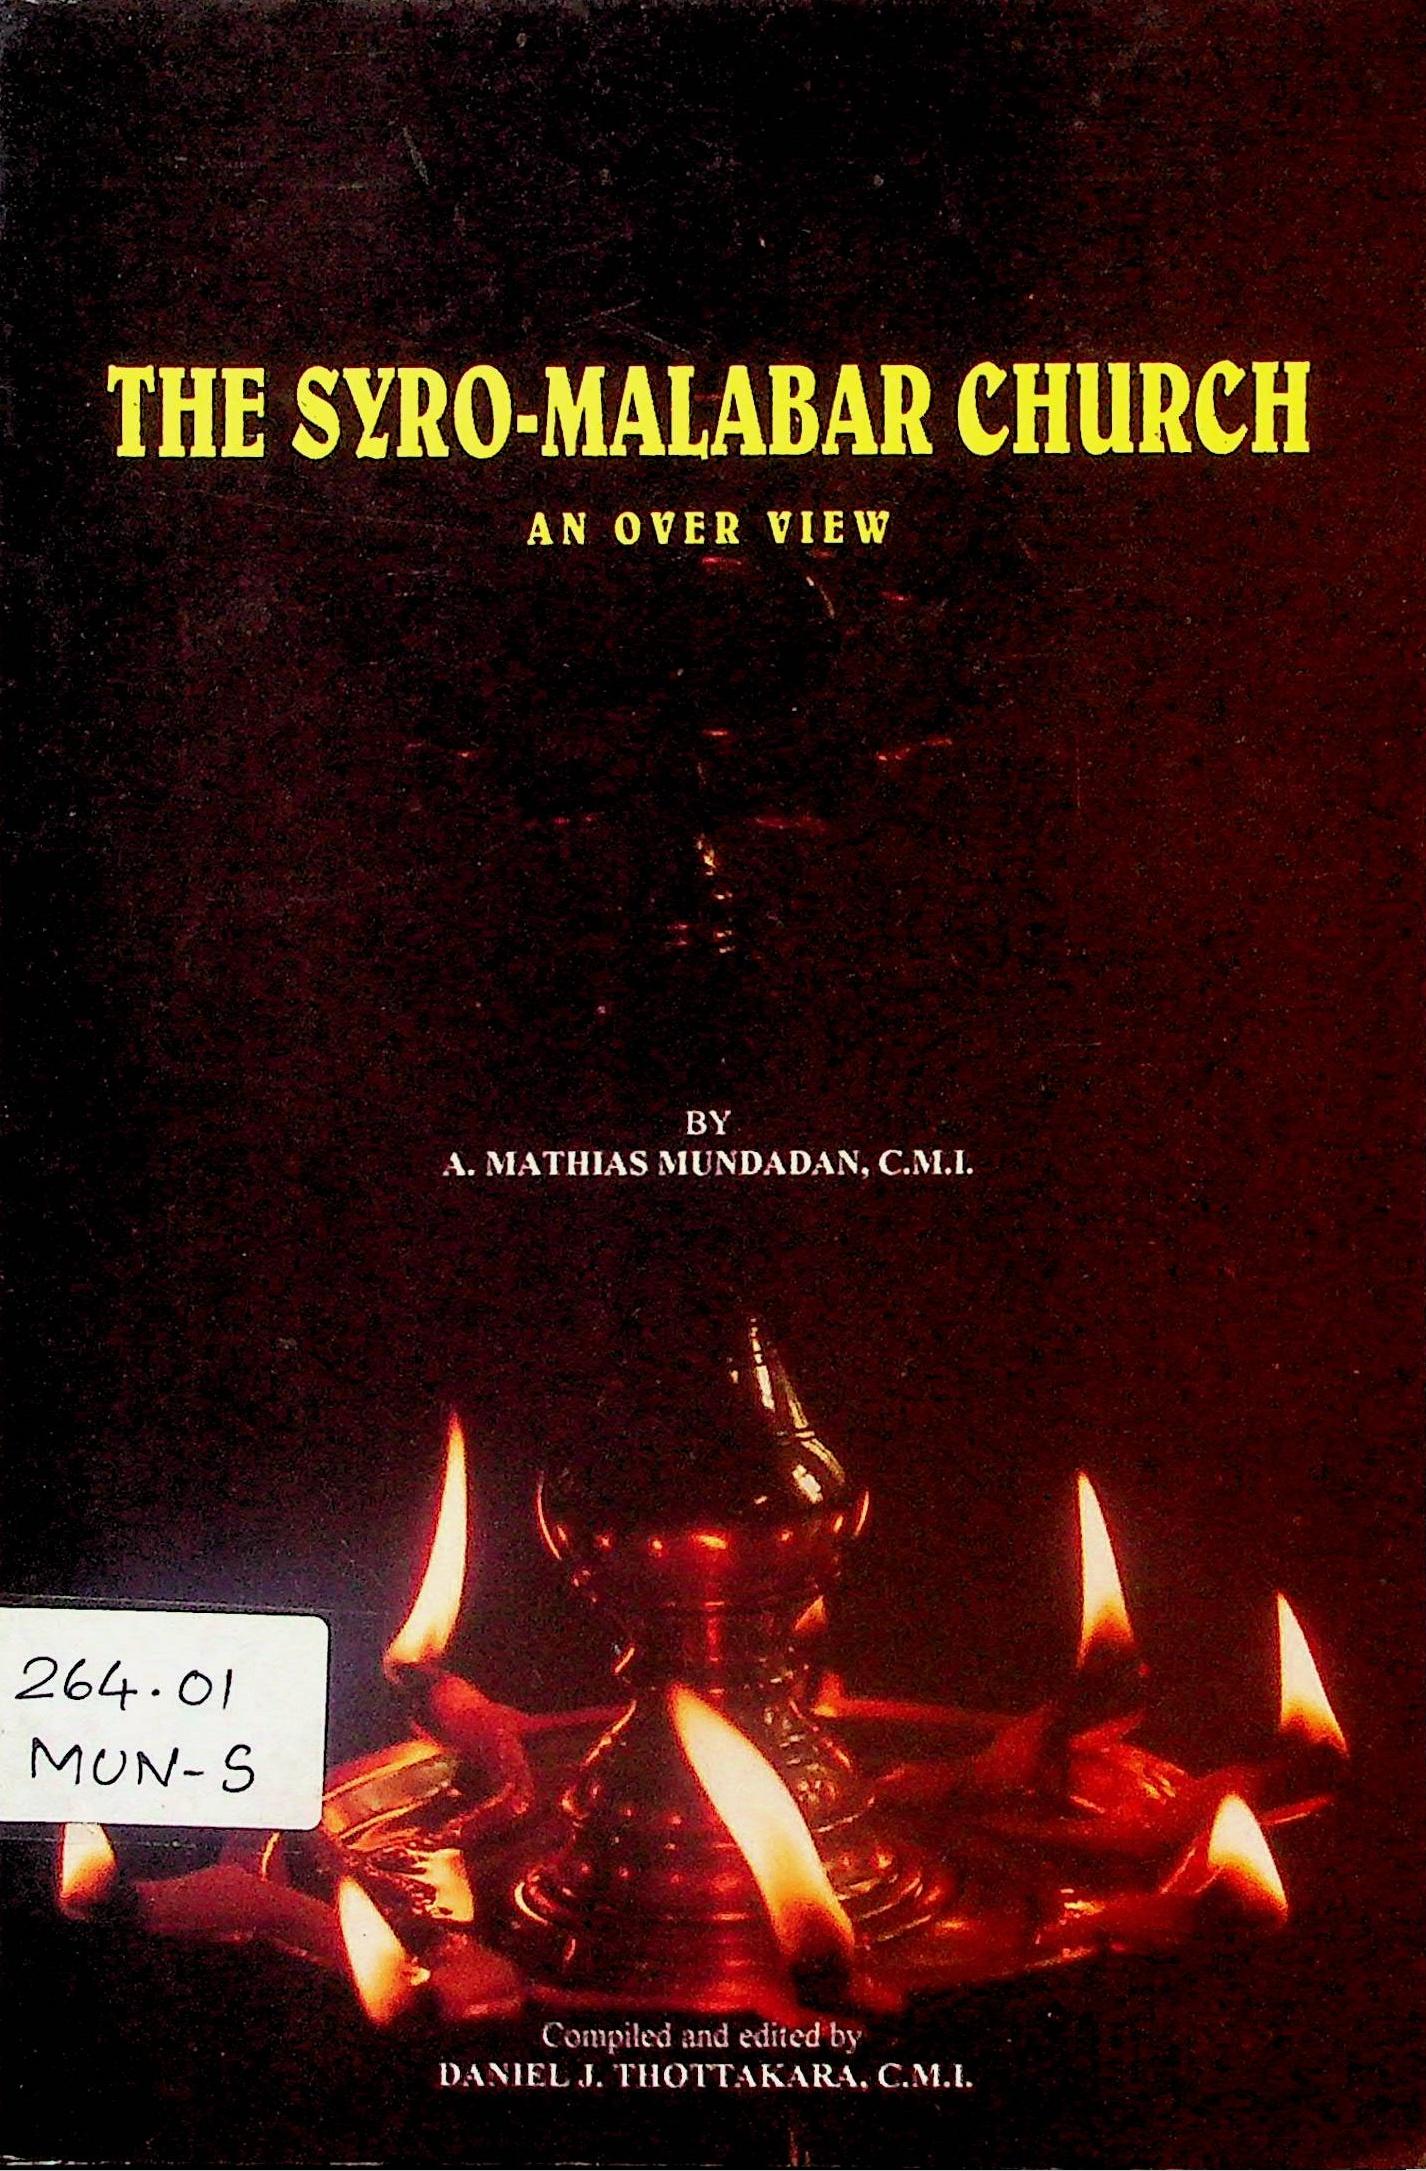 The Syro-Malabar Church